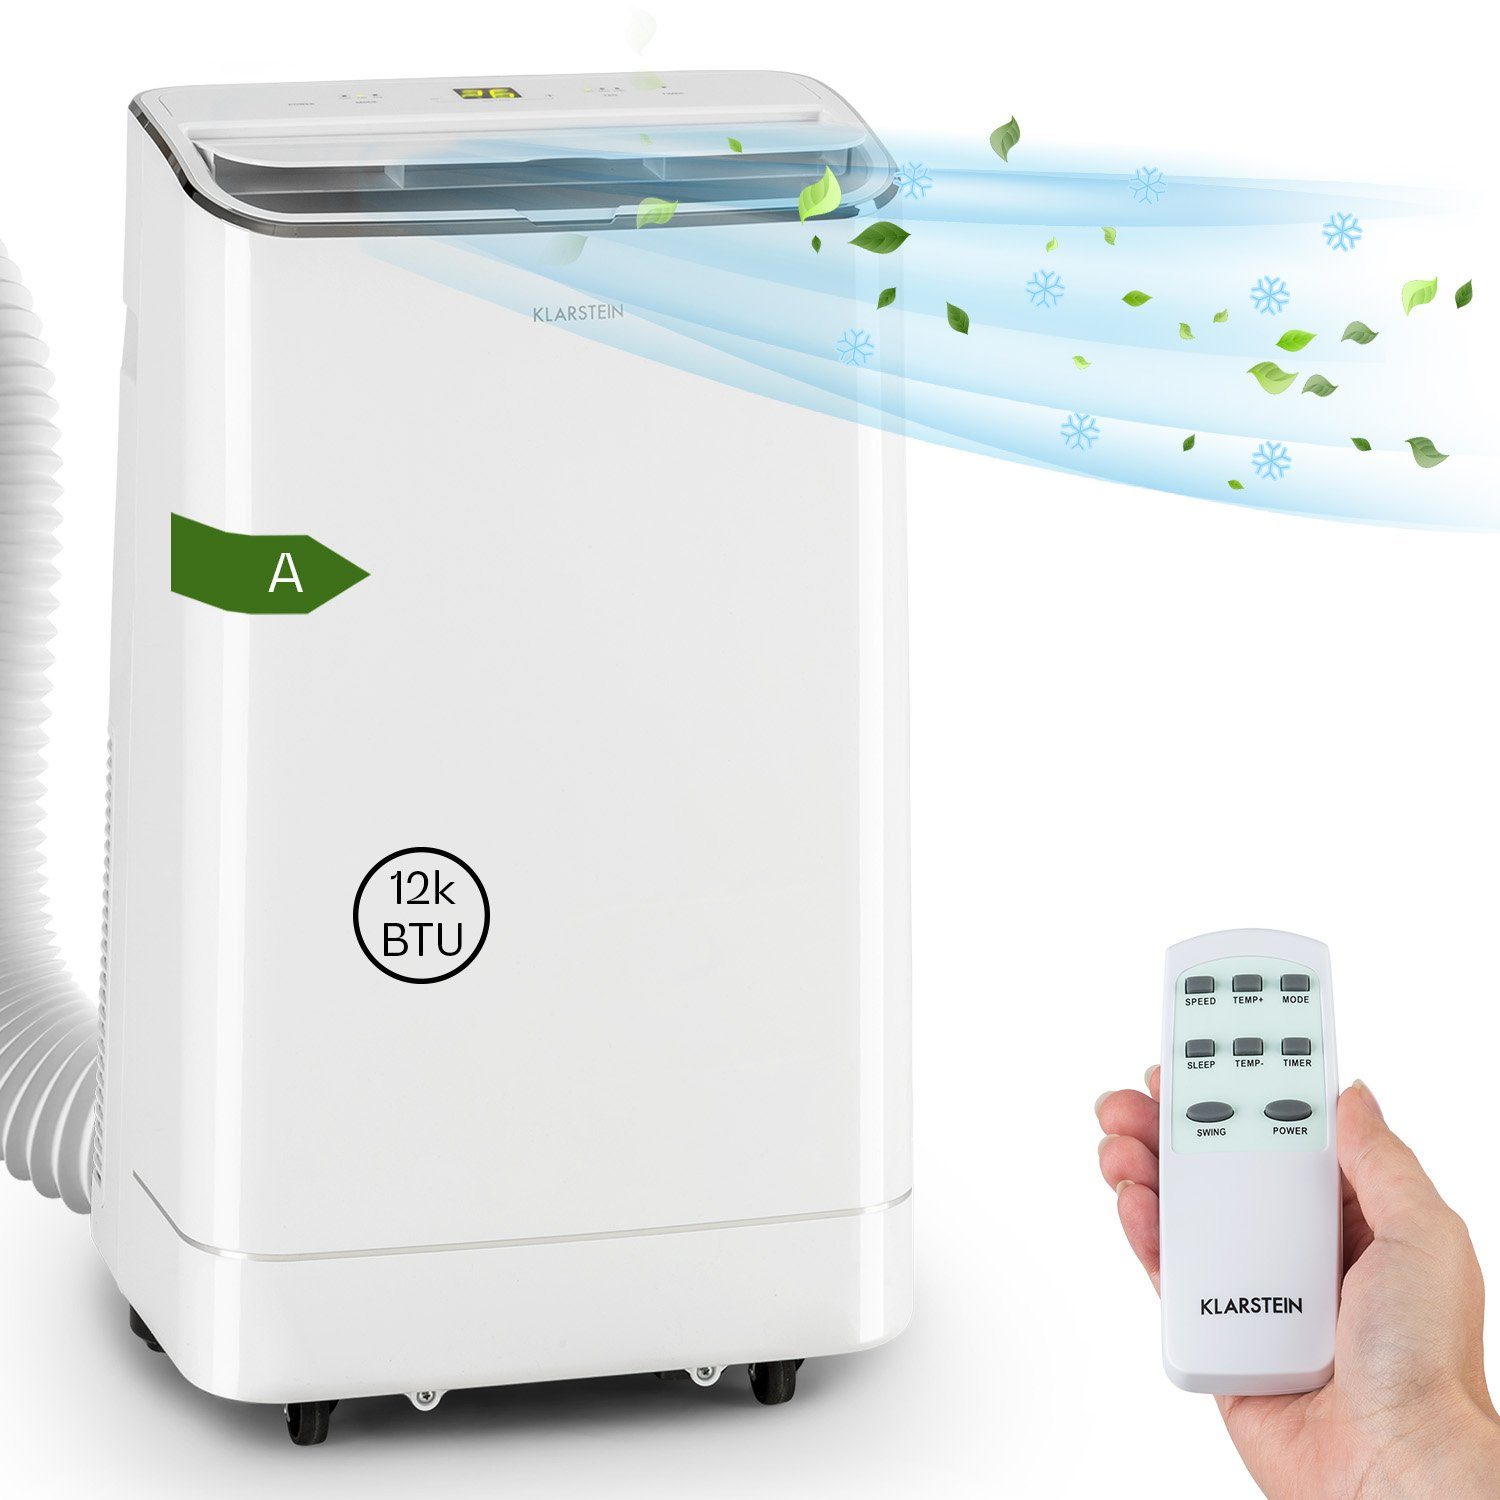 Klarstein Klimagerät Iceblock, Klimagerät mobil klimaanlage Air Conditioner  Kühlgerät Luftkühler